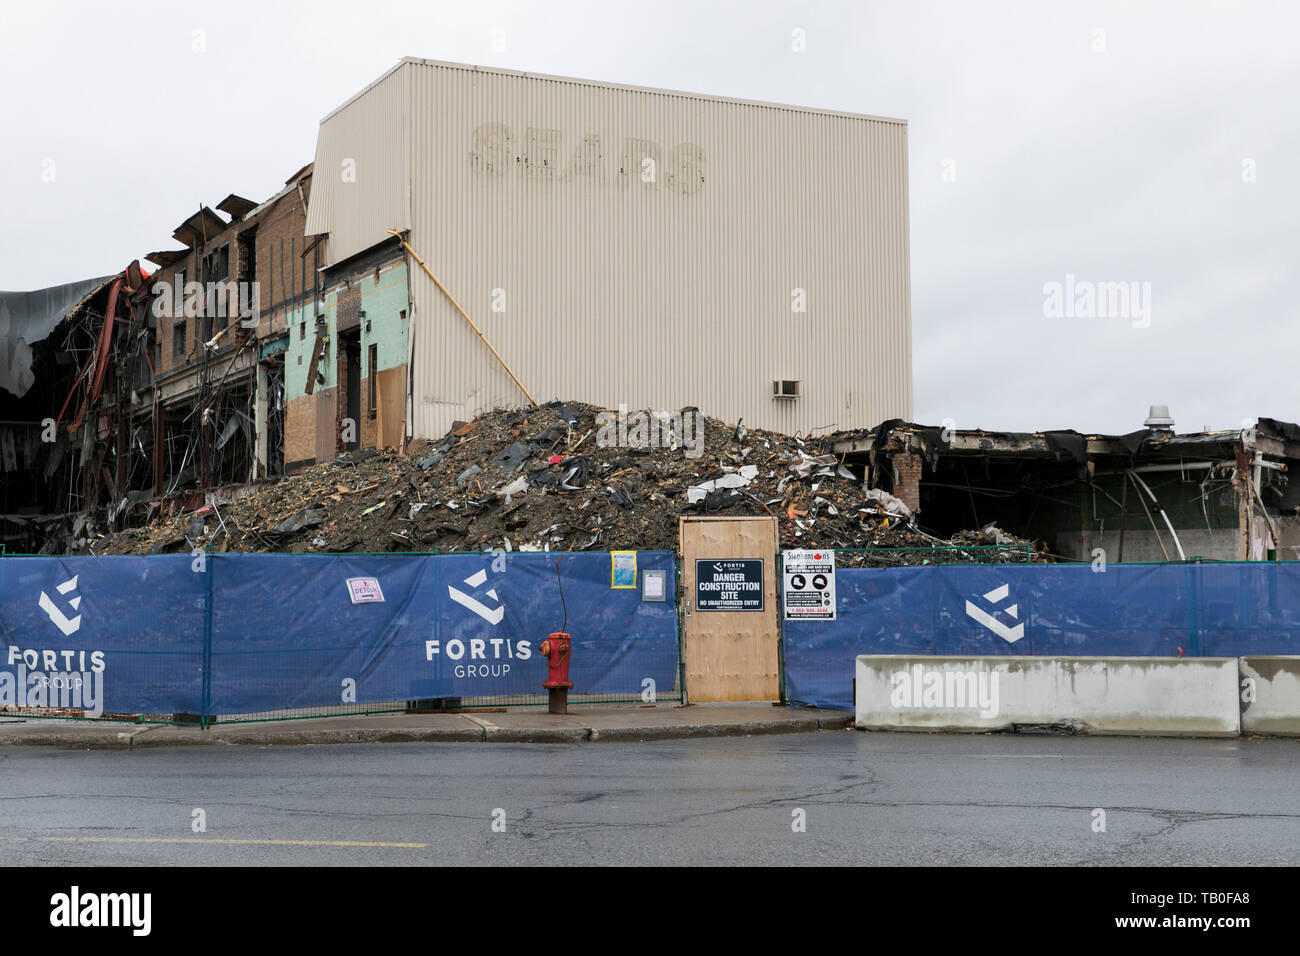 Entoure de débris le site d'un magasin de détail Sears fermé lors de sa démolition, à Ottawa, Ontario, Canada, le 20 avril 2019. Banque D'Images